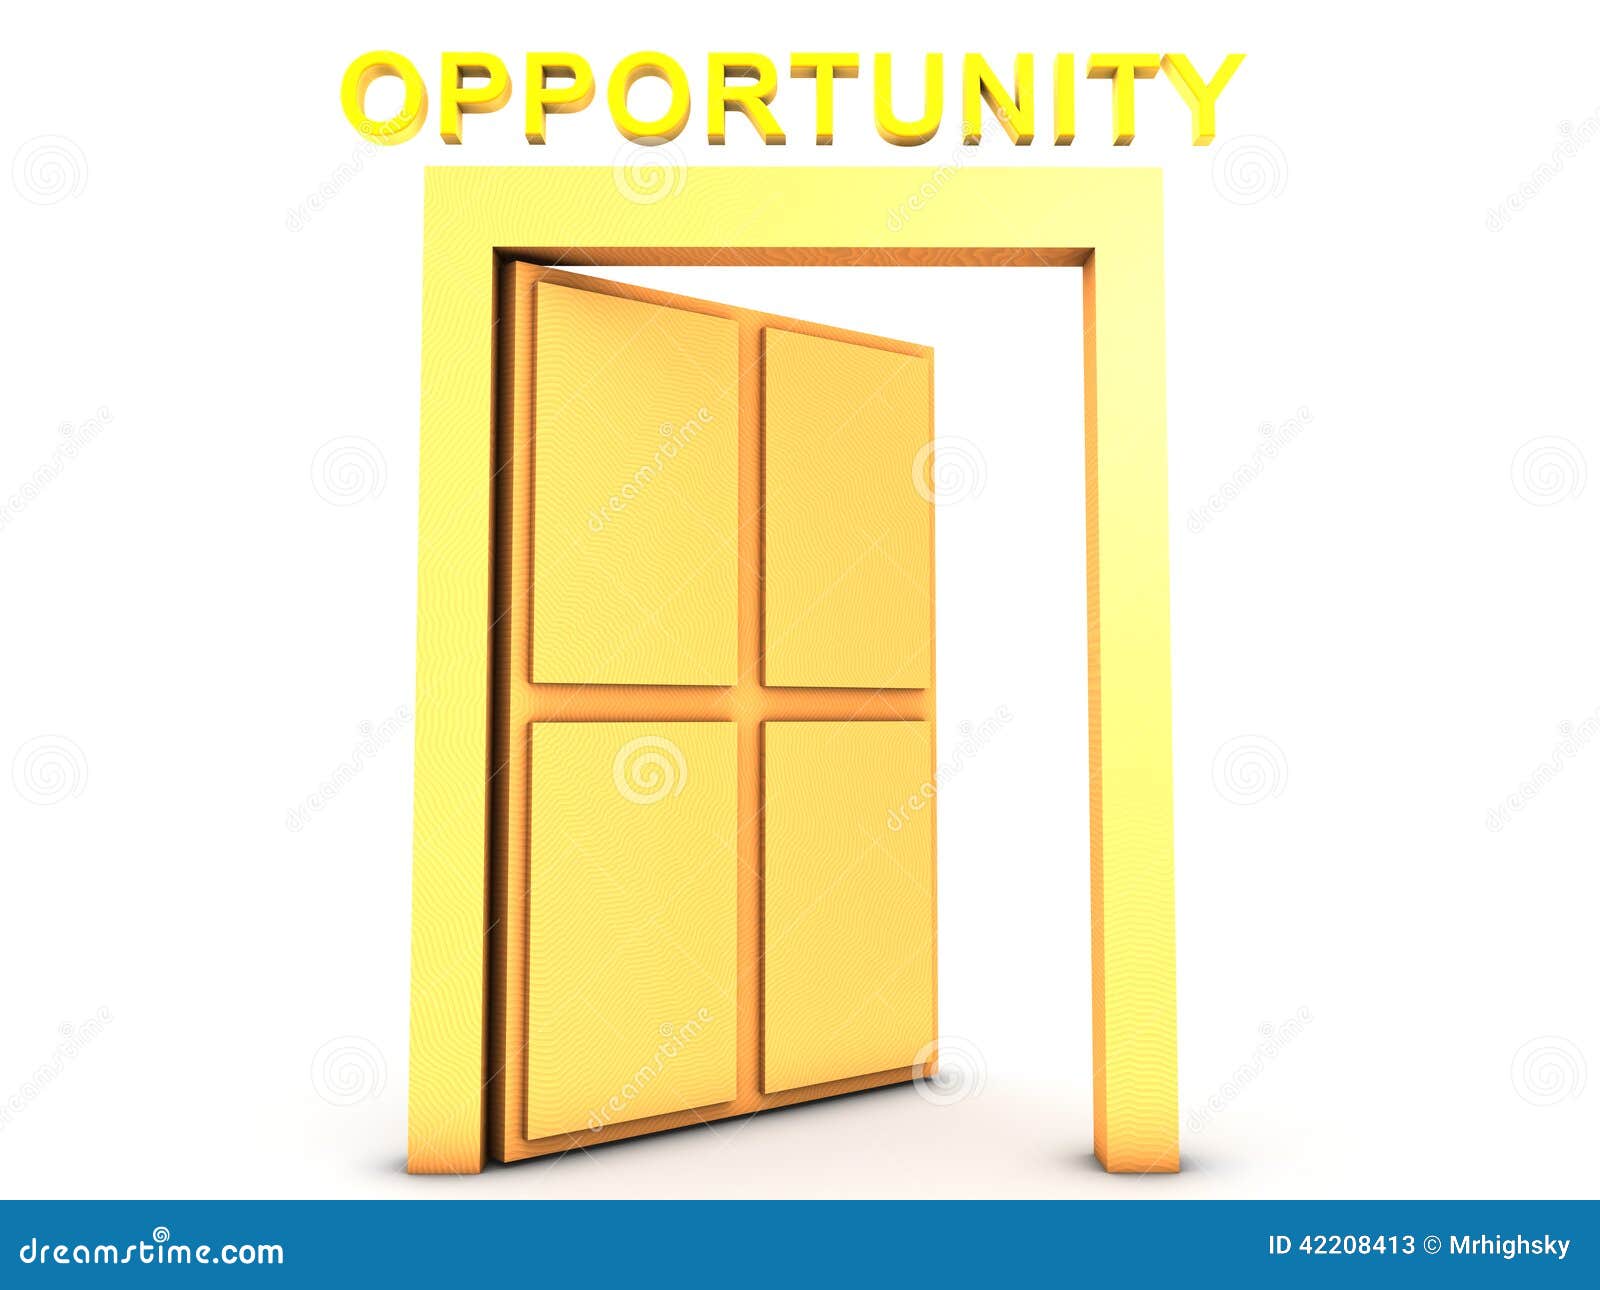 golden-opportunity-d-render-wooden-open-door-text-42208413.jpg